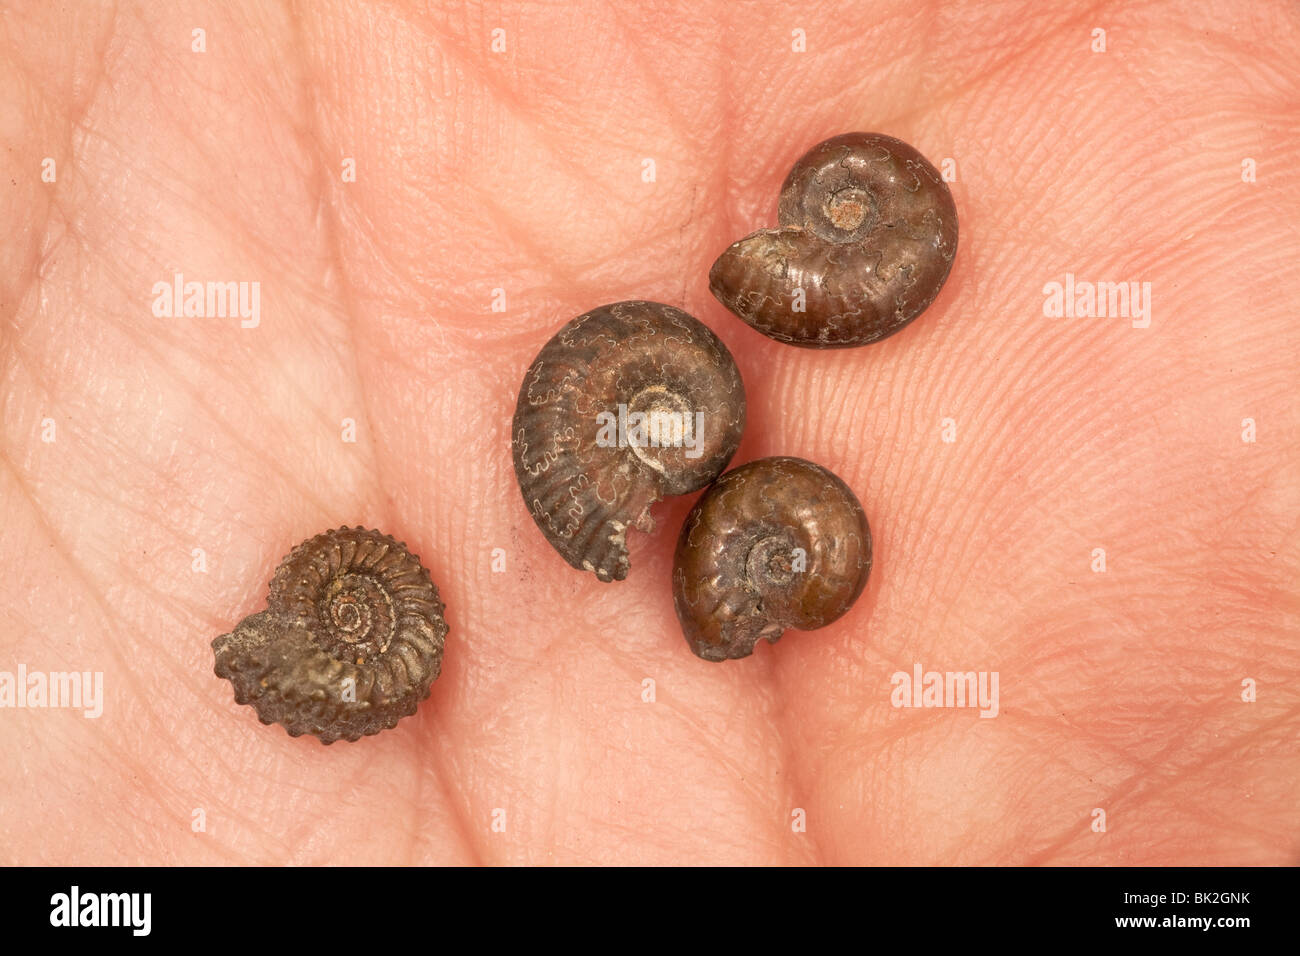 Pyritisierten fossilen Ammoniten, winzige Proben in der Handfläche einer Hand statt Stockfoto